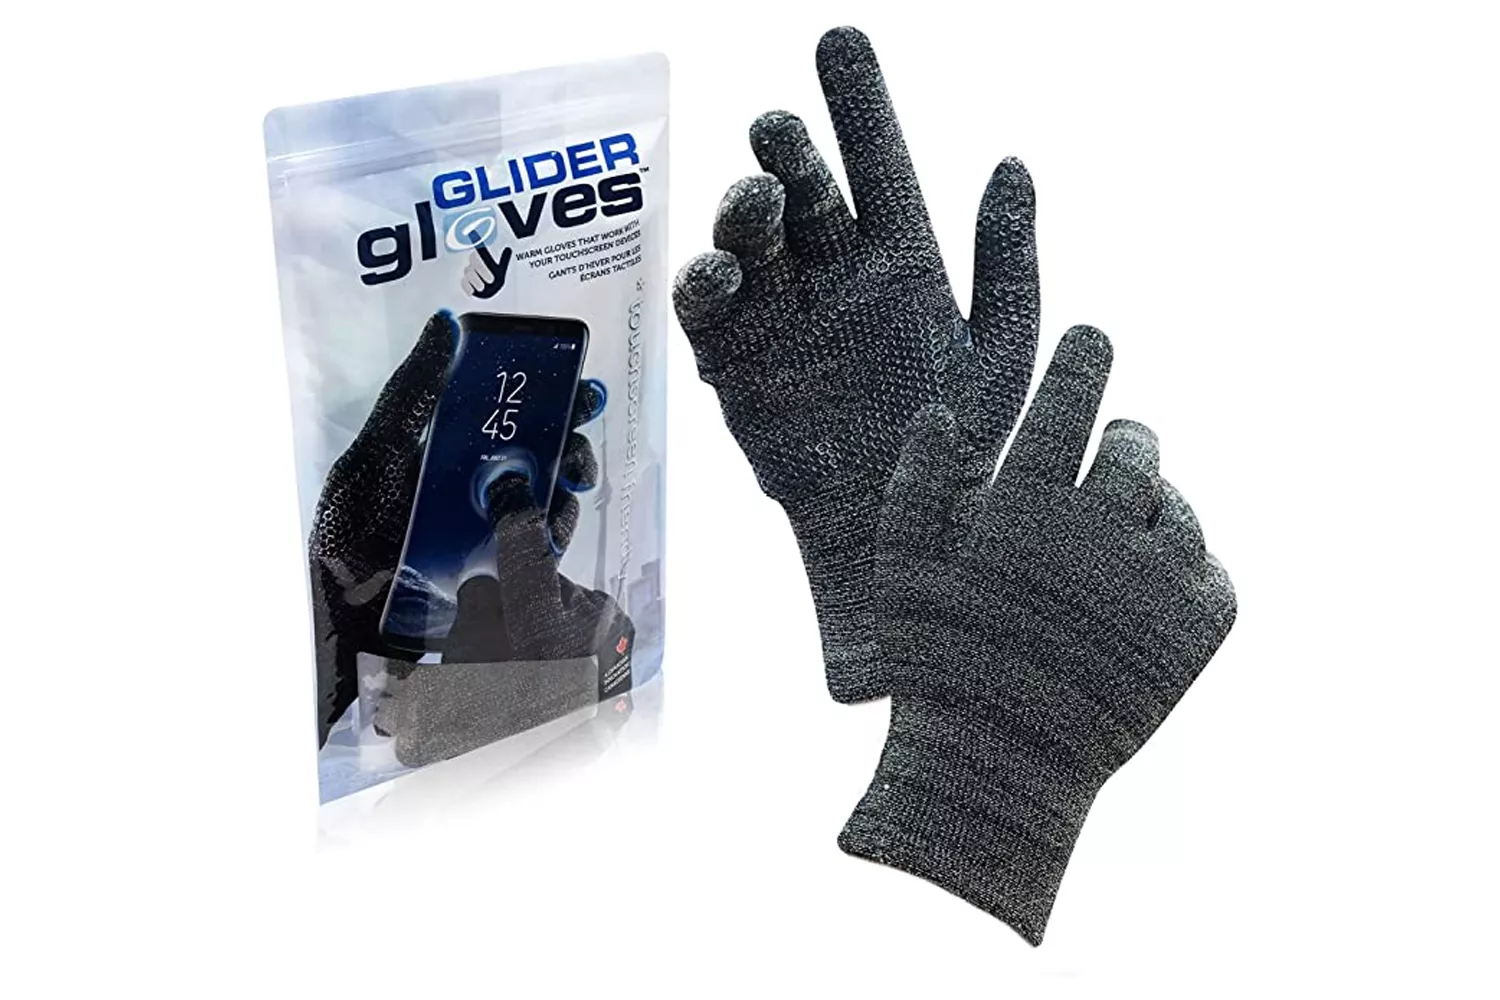 glider-gloves-touchscreen-gloves